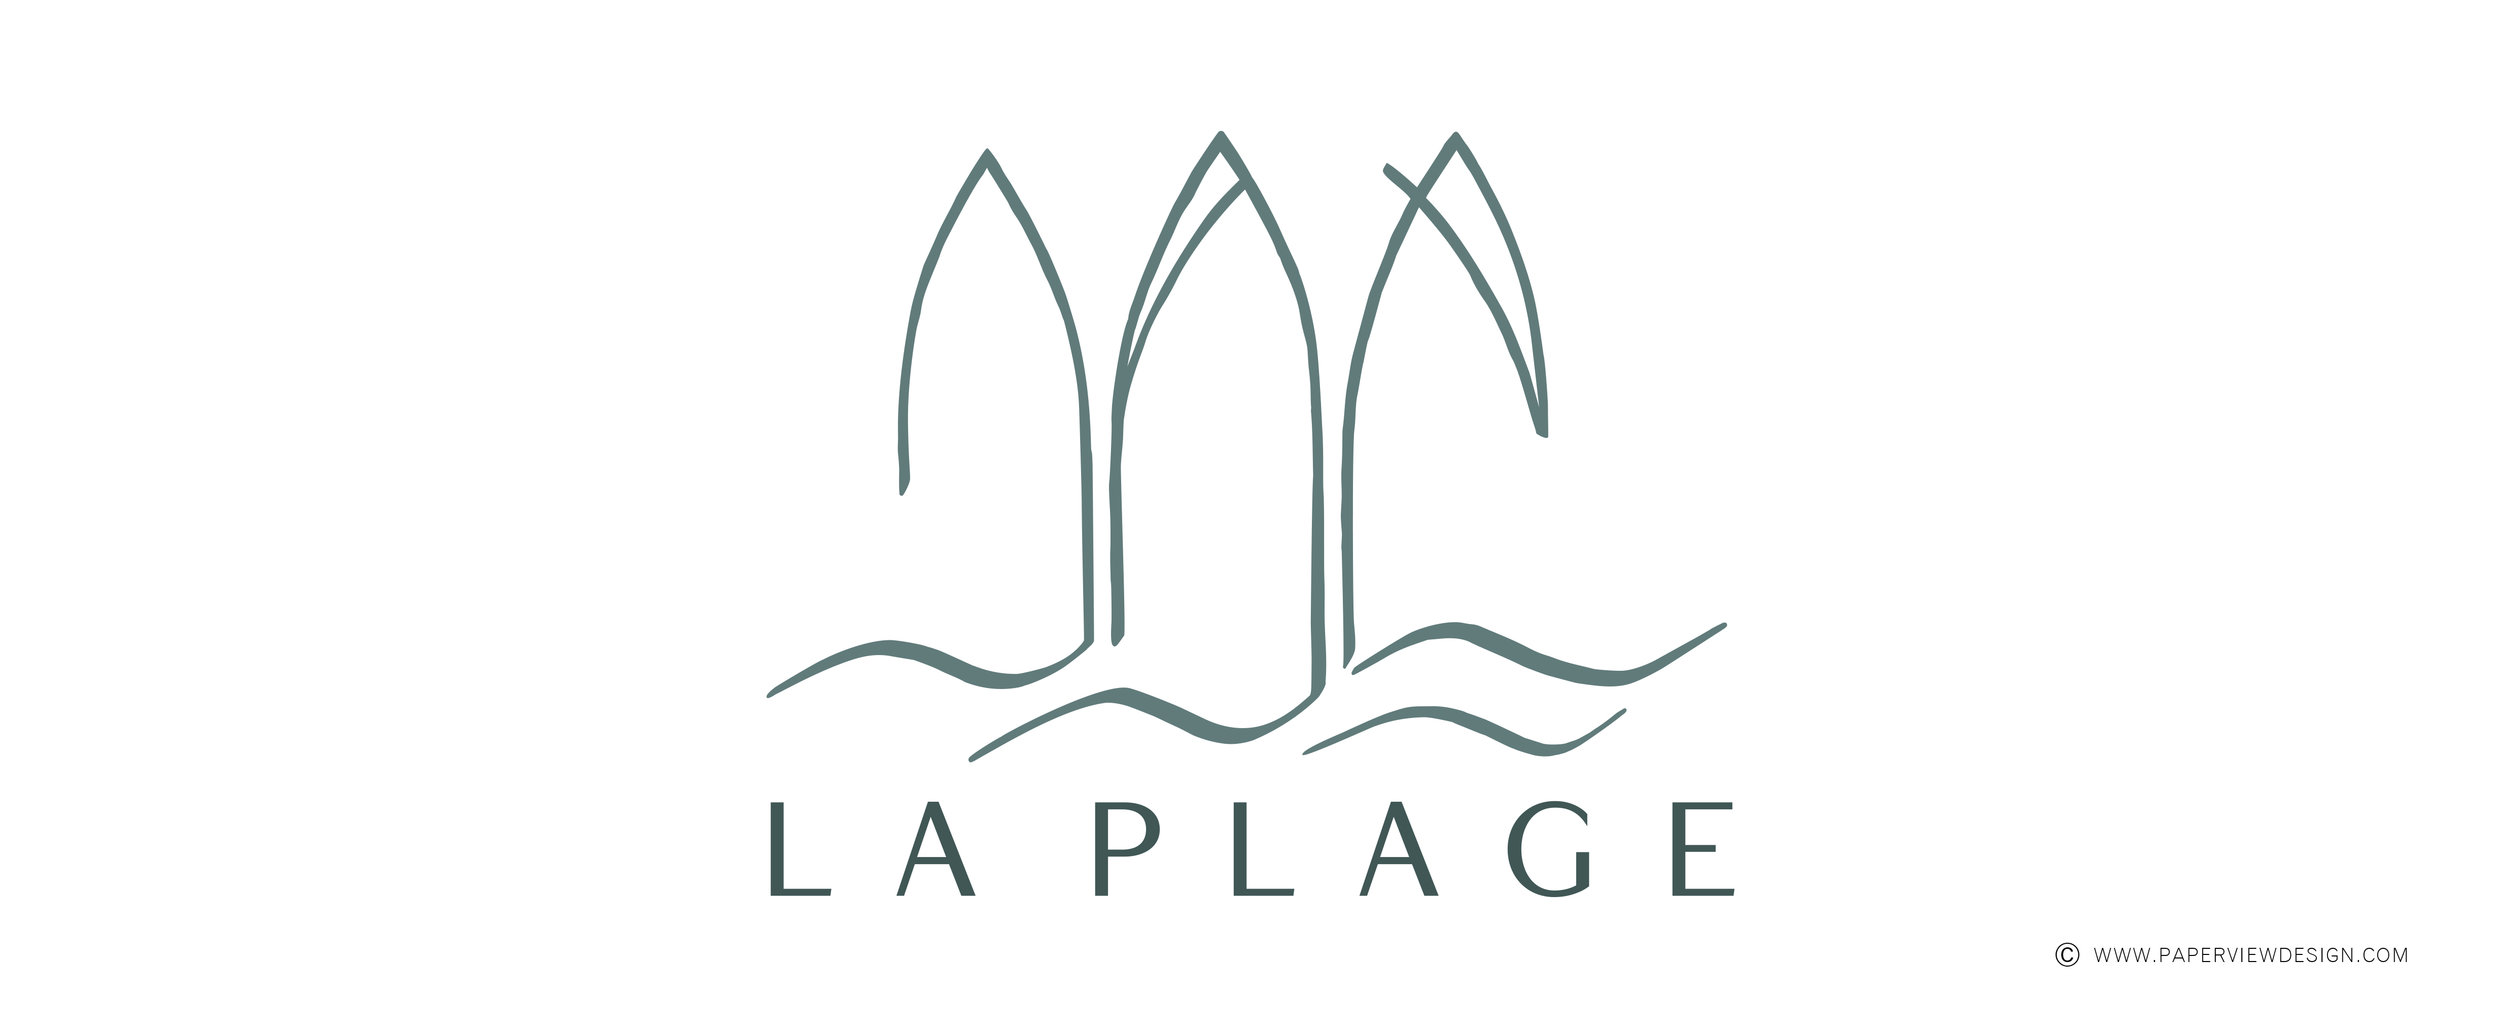 LaPlage-logo-website.jpg